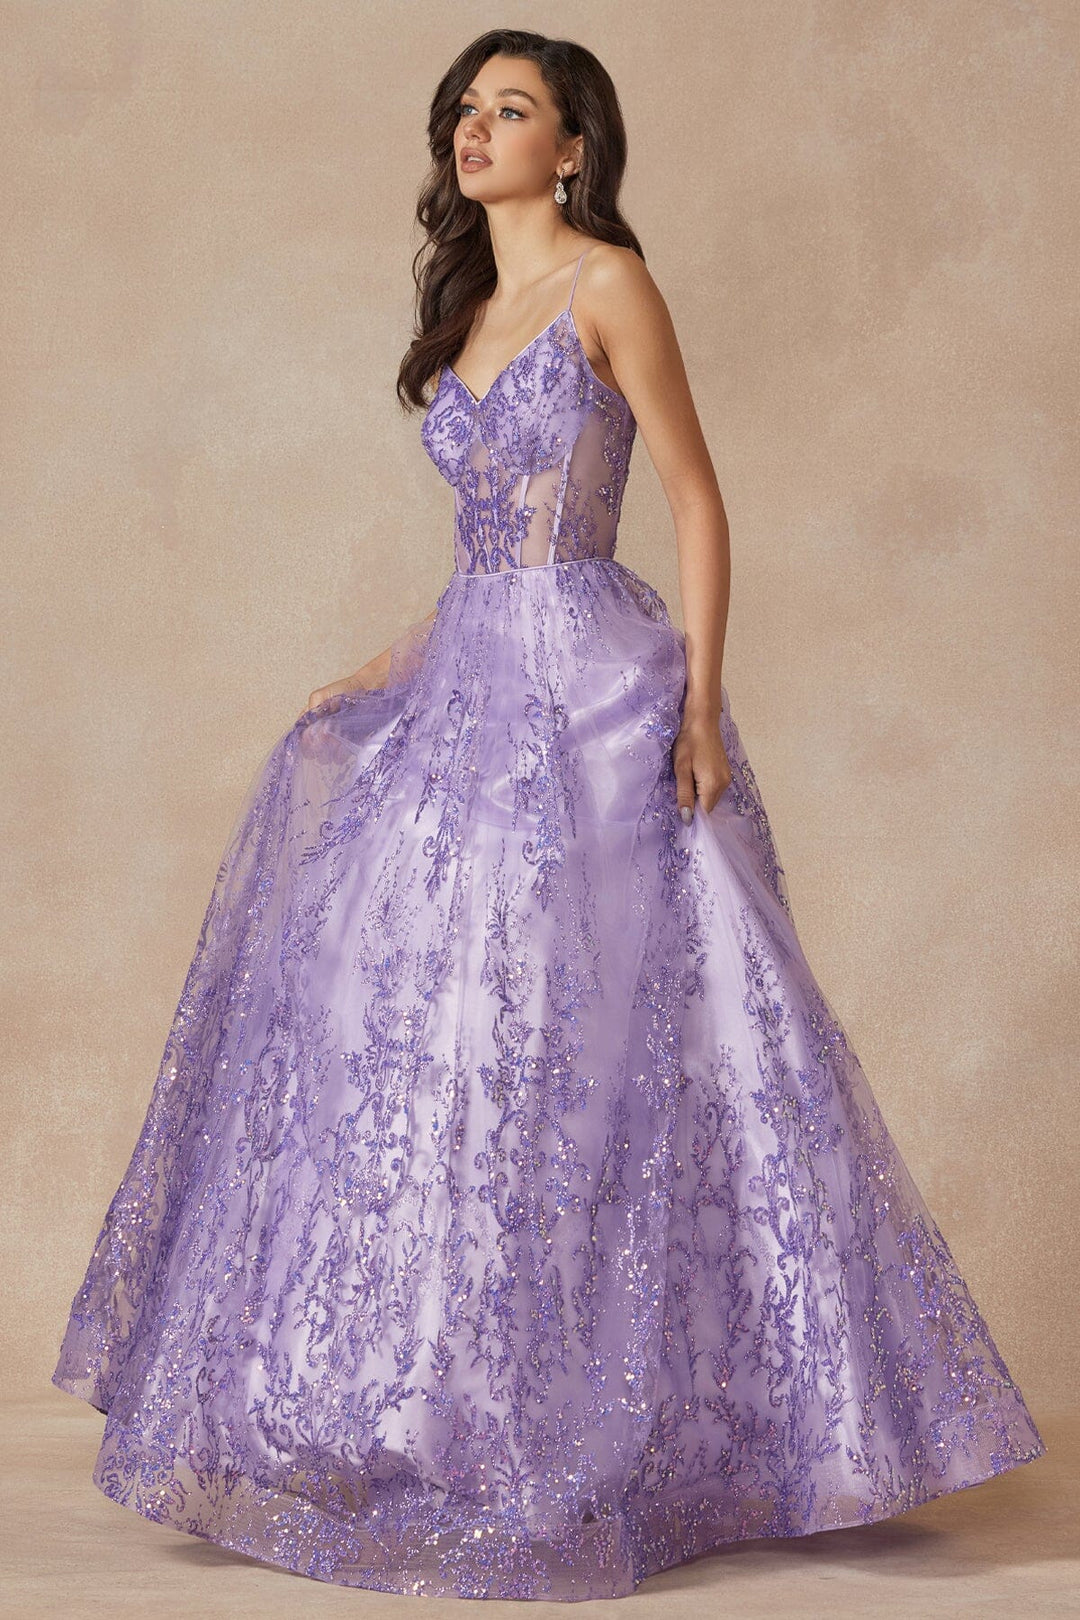 Glitter Print Sleeveless Corset Gown by Juliet 2414